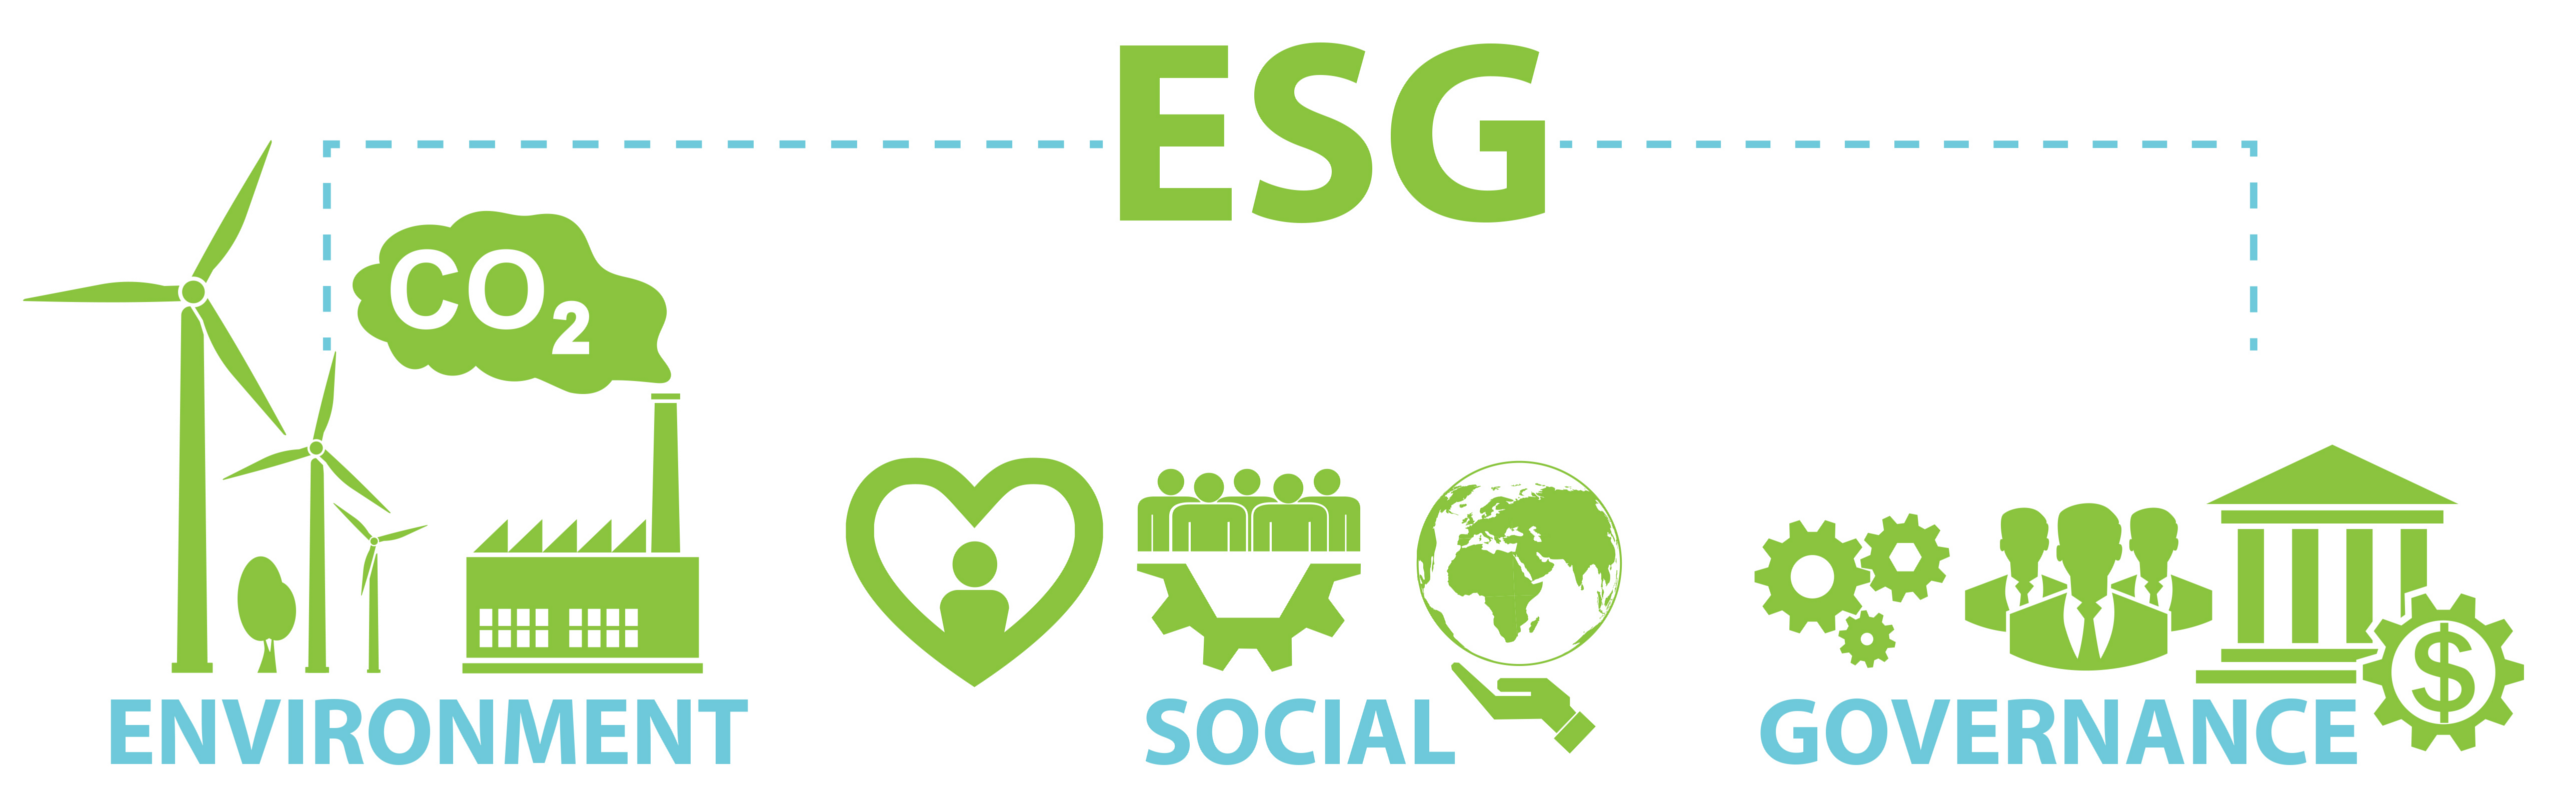 Esg цели. ESG проекты. ESG логотип. ESG концепция. ESG экология.